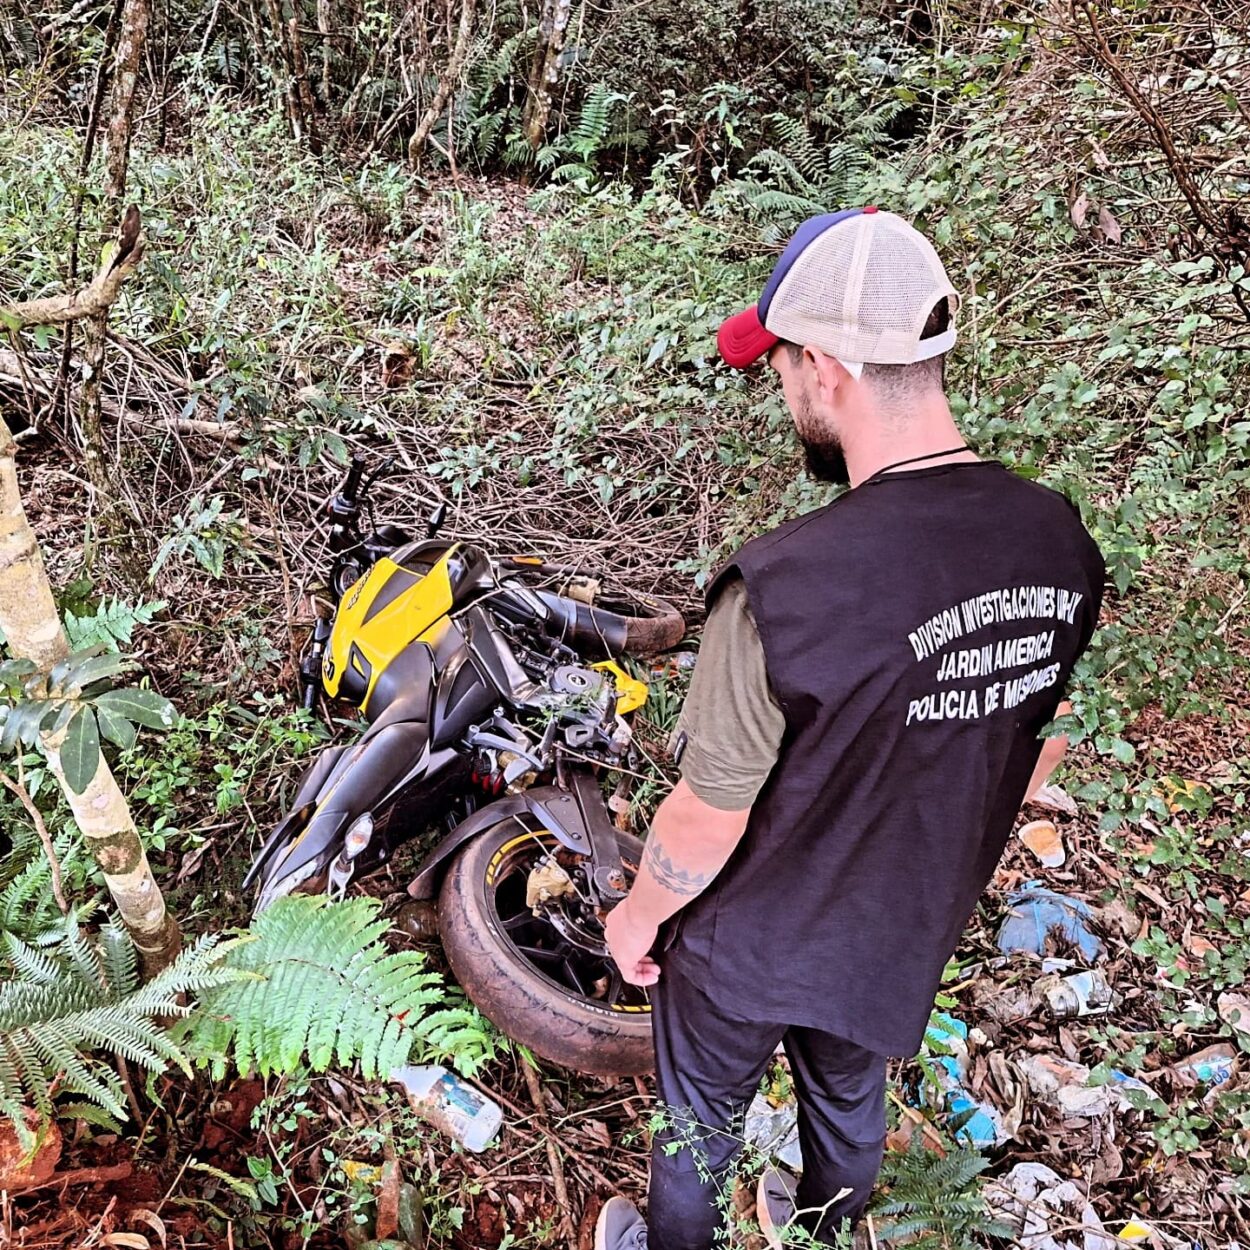 Continúan detenidos los integrantes de la red de robo y venta de motos en Jardín América: Son 7 los rodados recuperados imagen-2